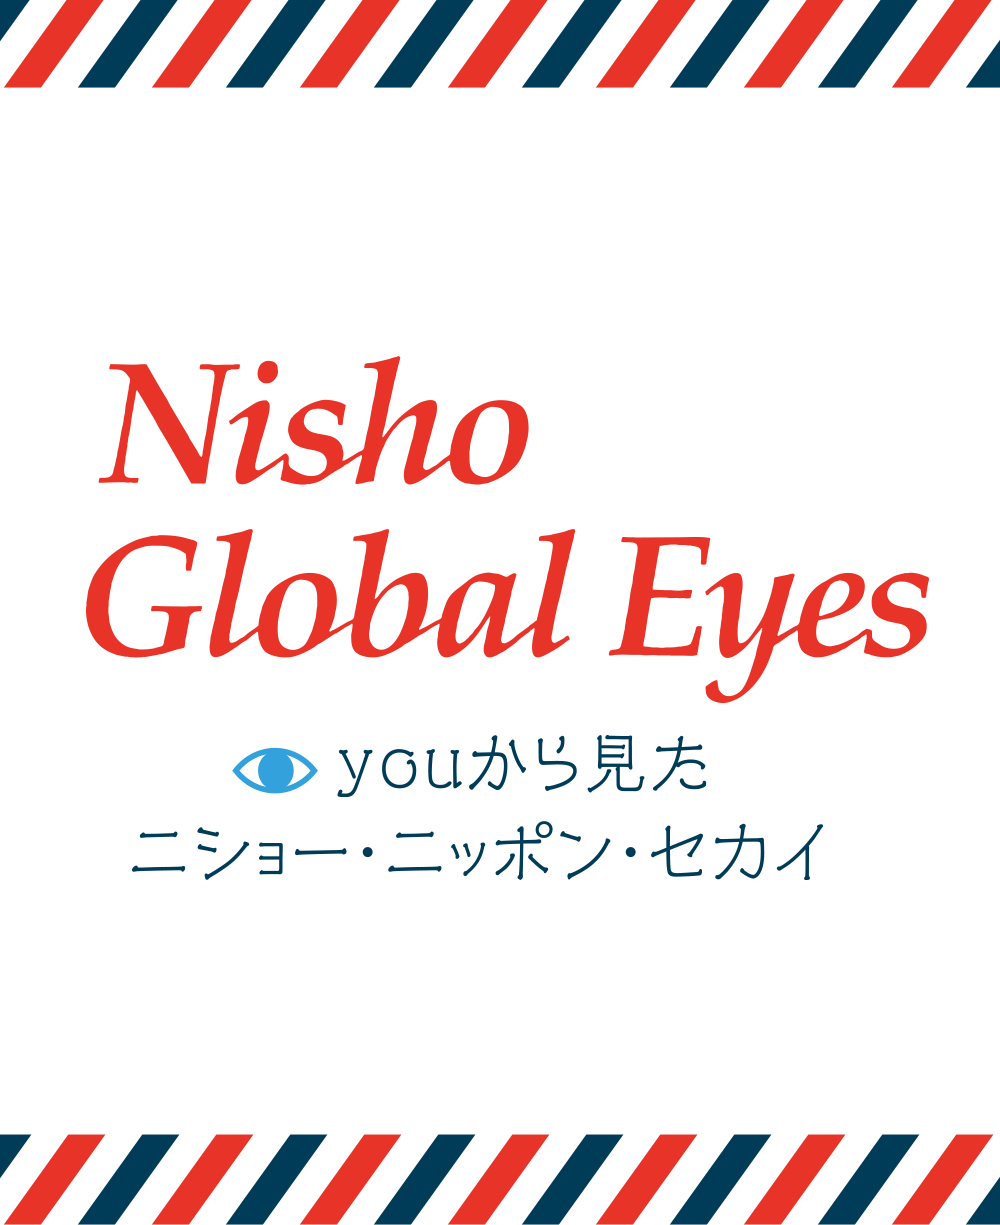 Nisho Global Eyes